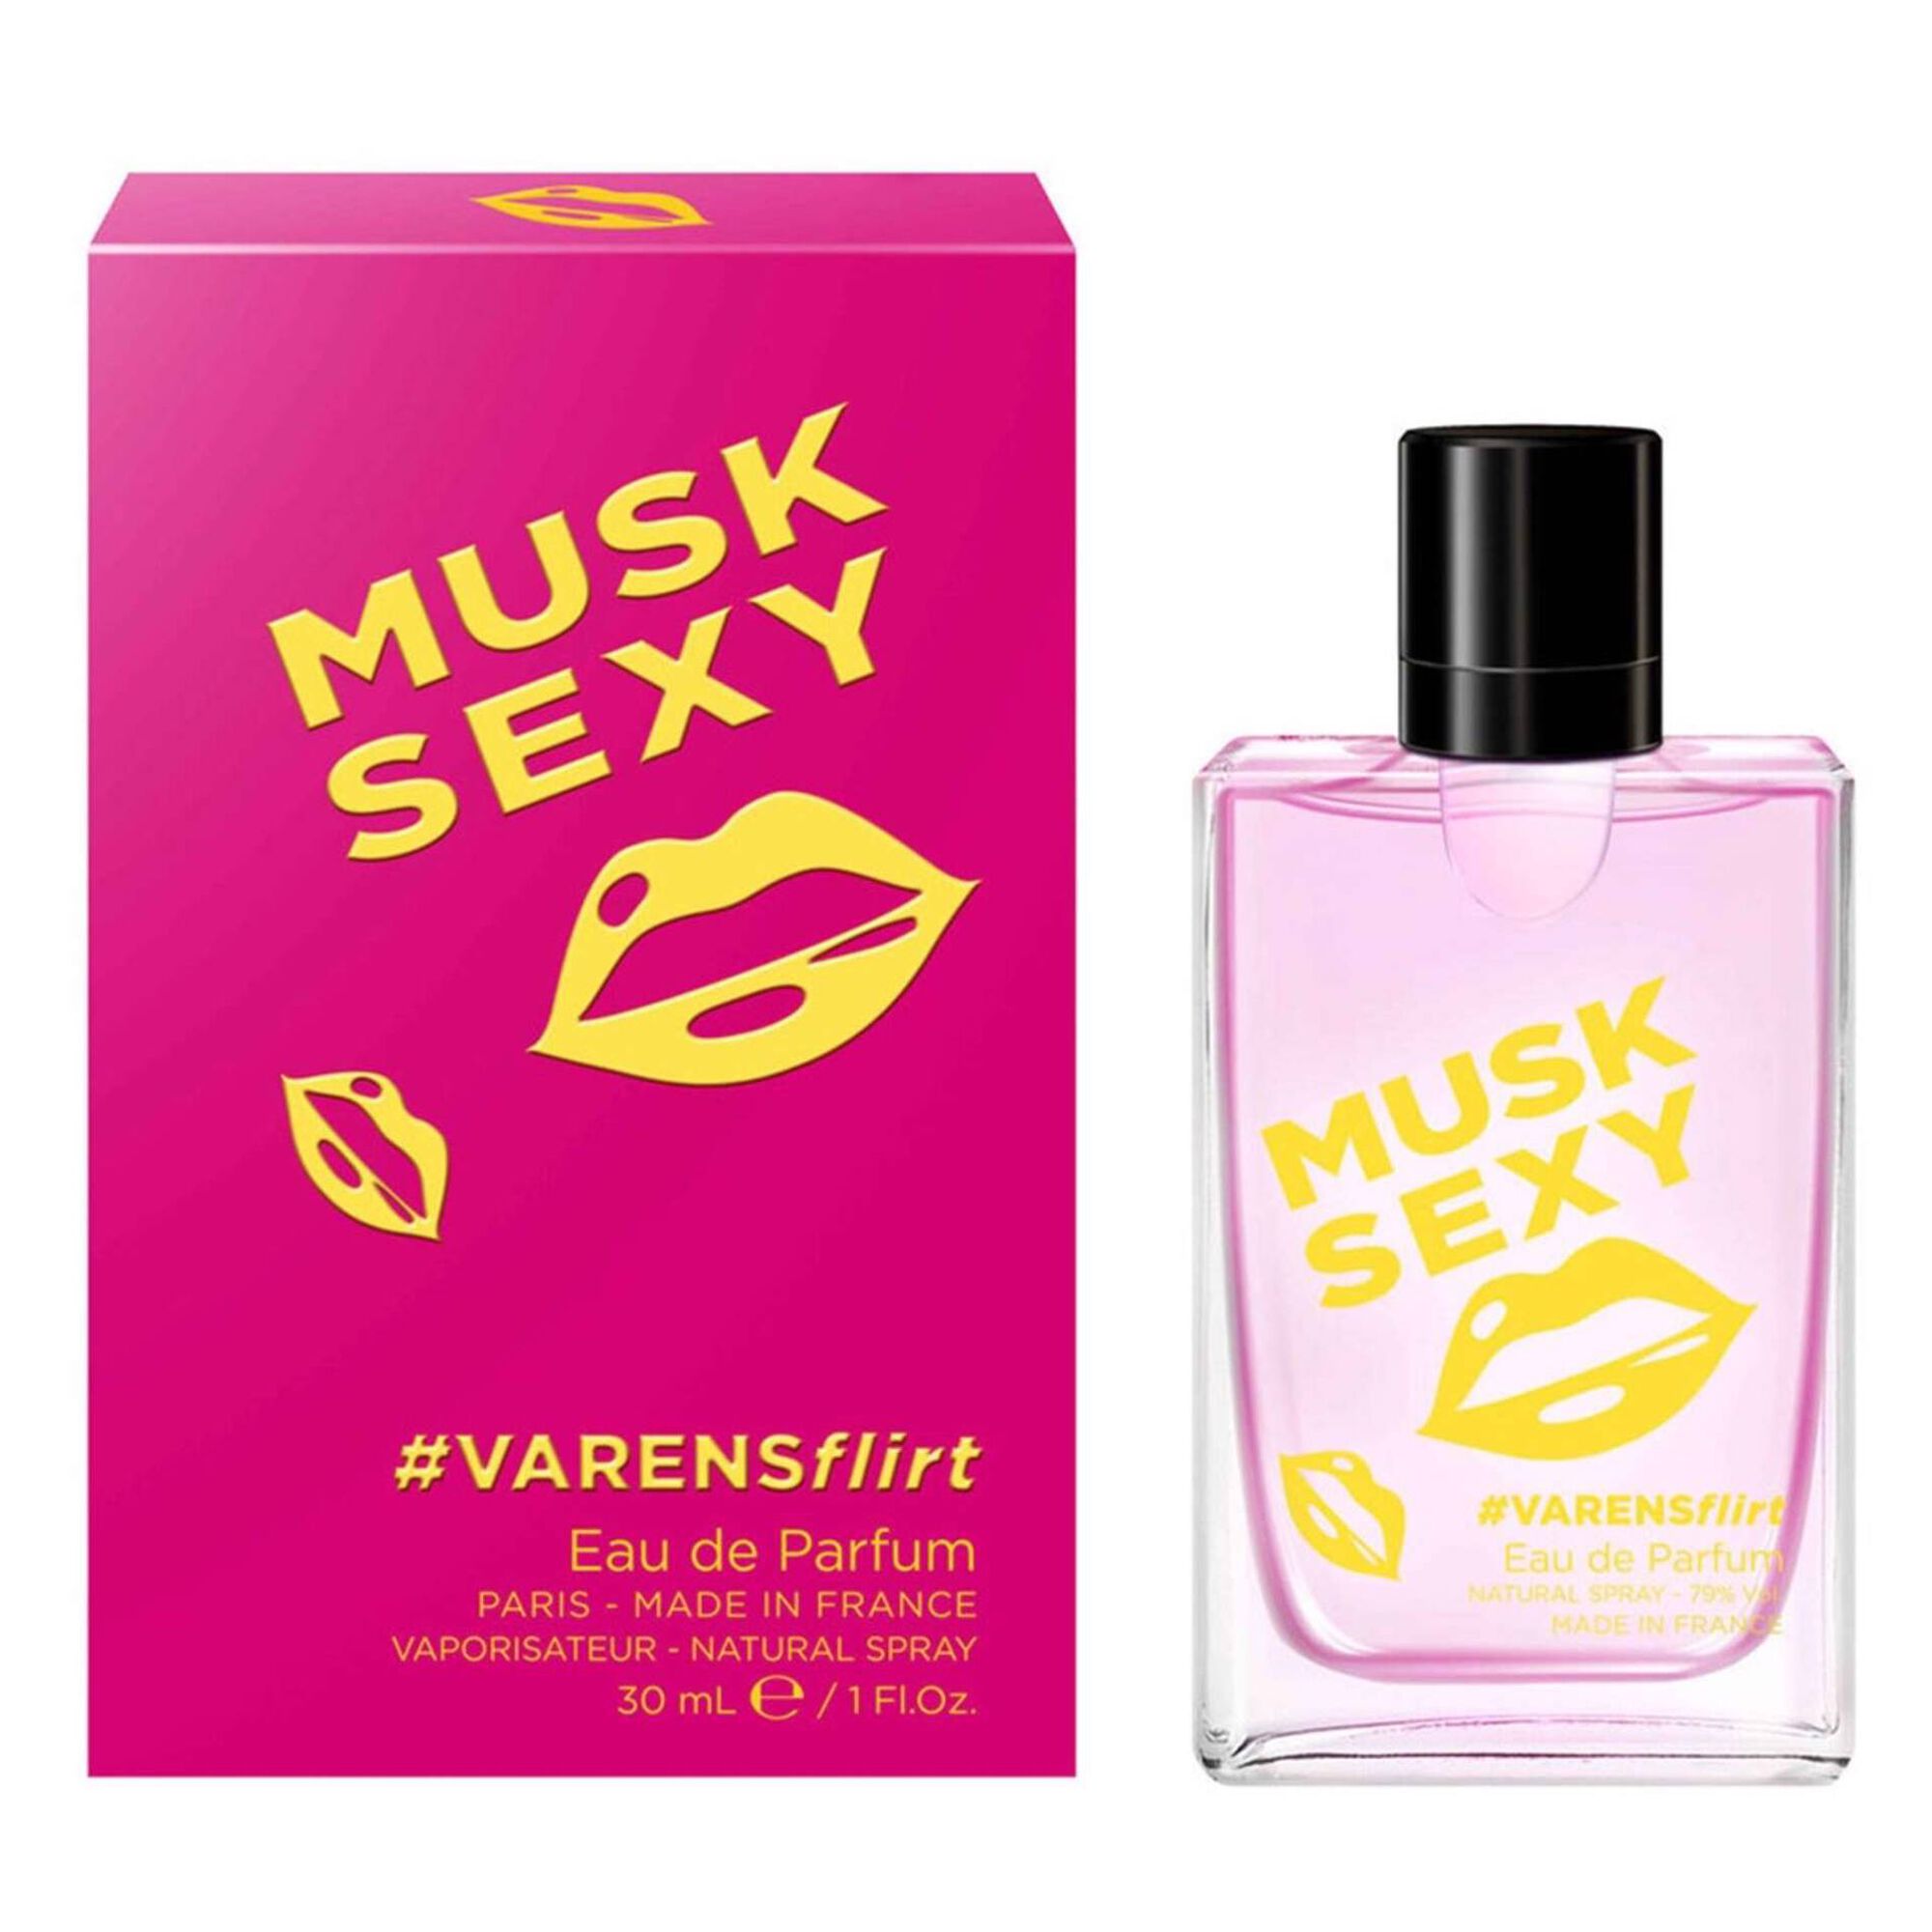 Eau de Parfum Senhora Musk Sexy